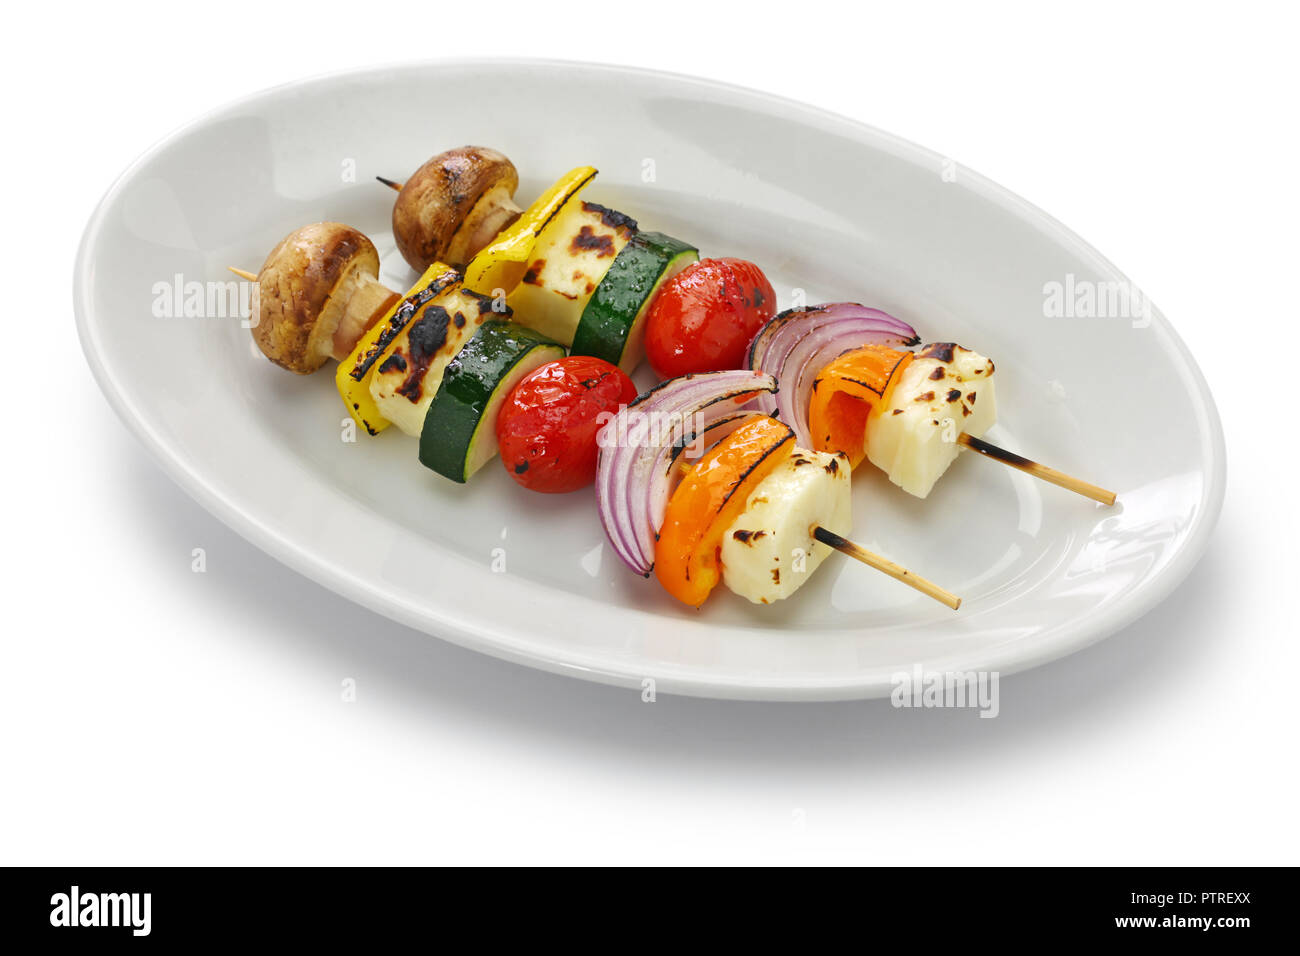 Brochettes de légumes fromage halloumi grillé kebab, plat végétarien en bonne santé Banque D'Images